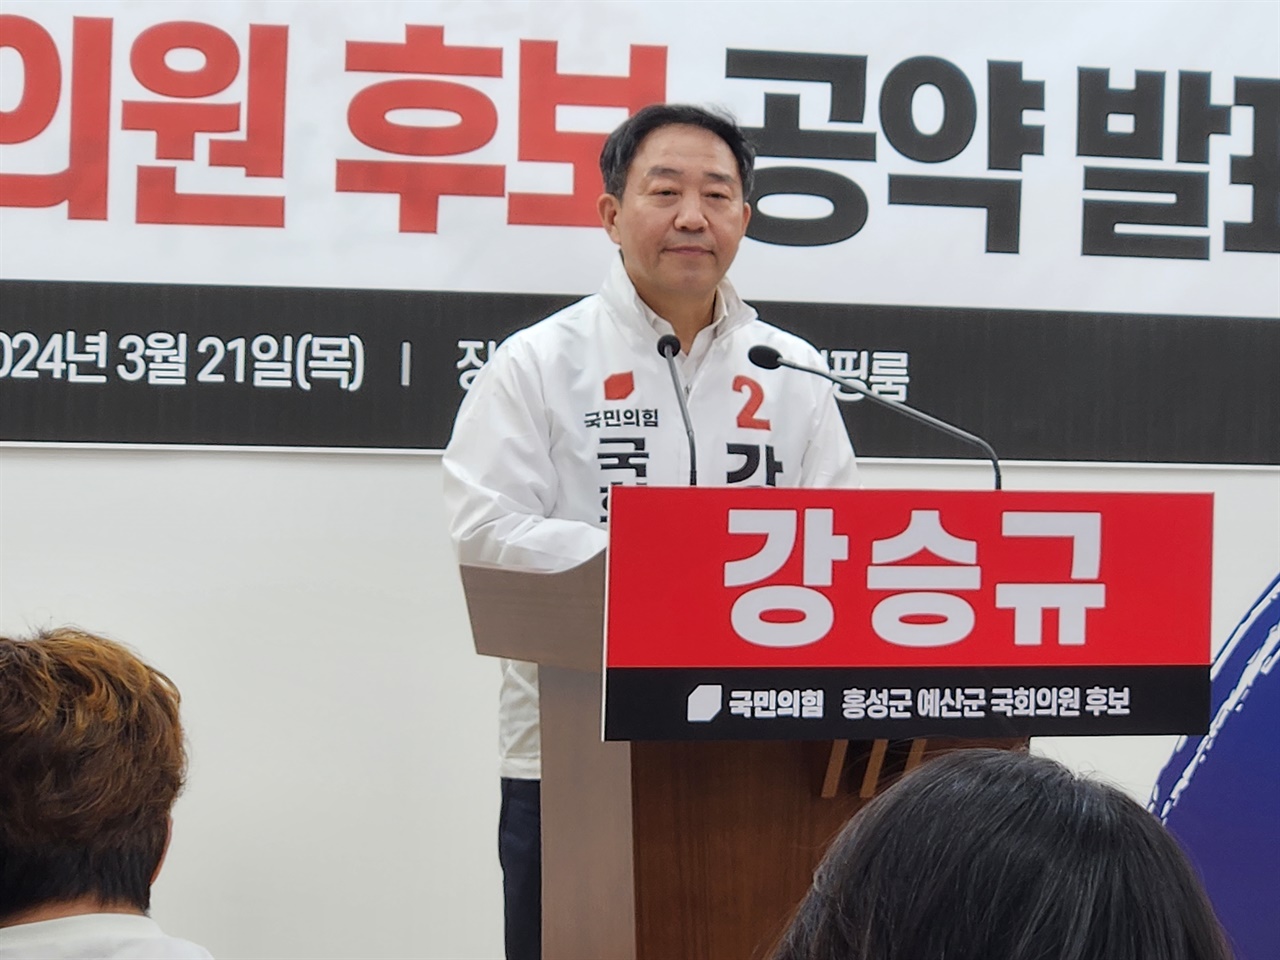 21일 기자회견 중인 강승규 국민의힘 충남 홍성예산 국회의원 후보.  